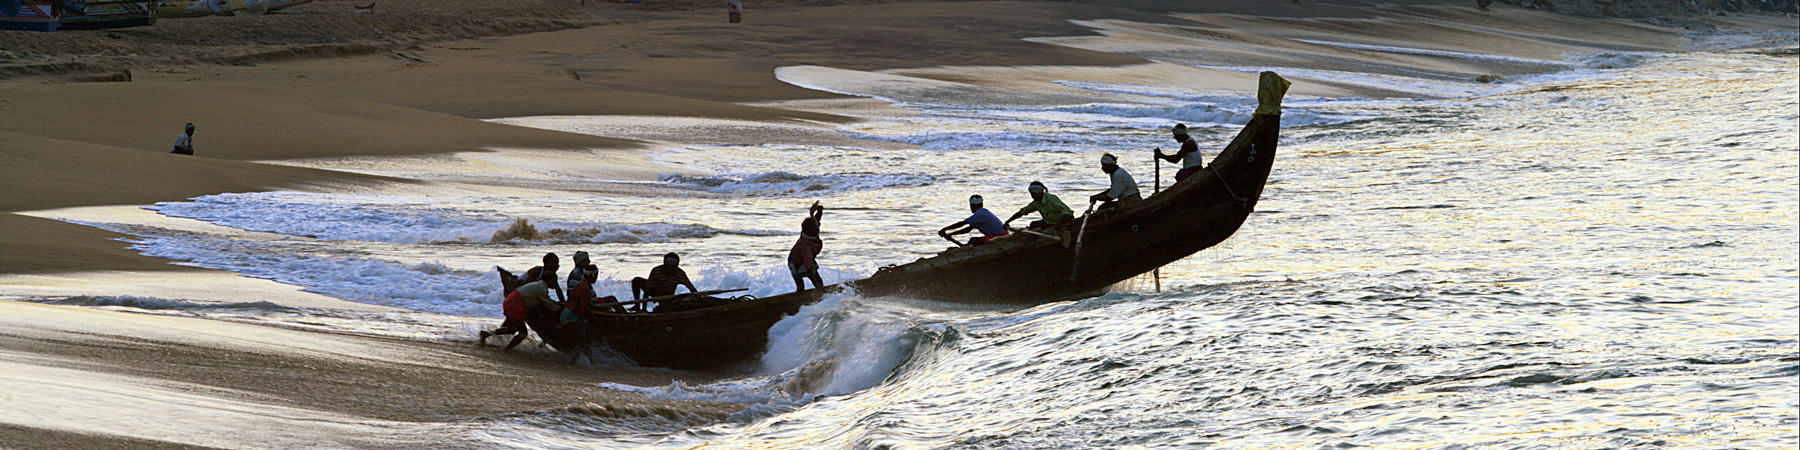 La petite pêche au Kerala, Inde du sud - Photo Pêcheur d'Images